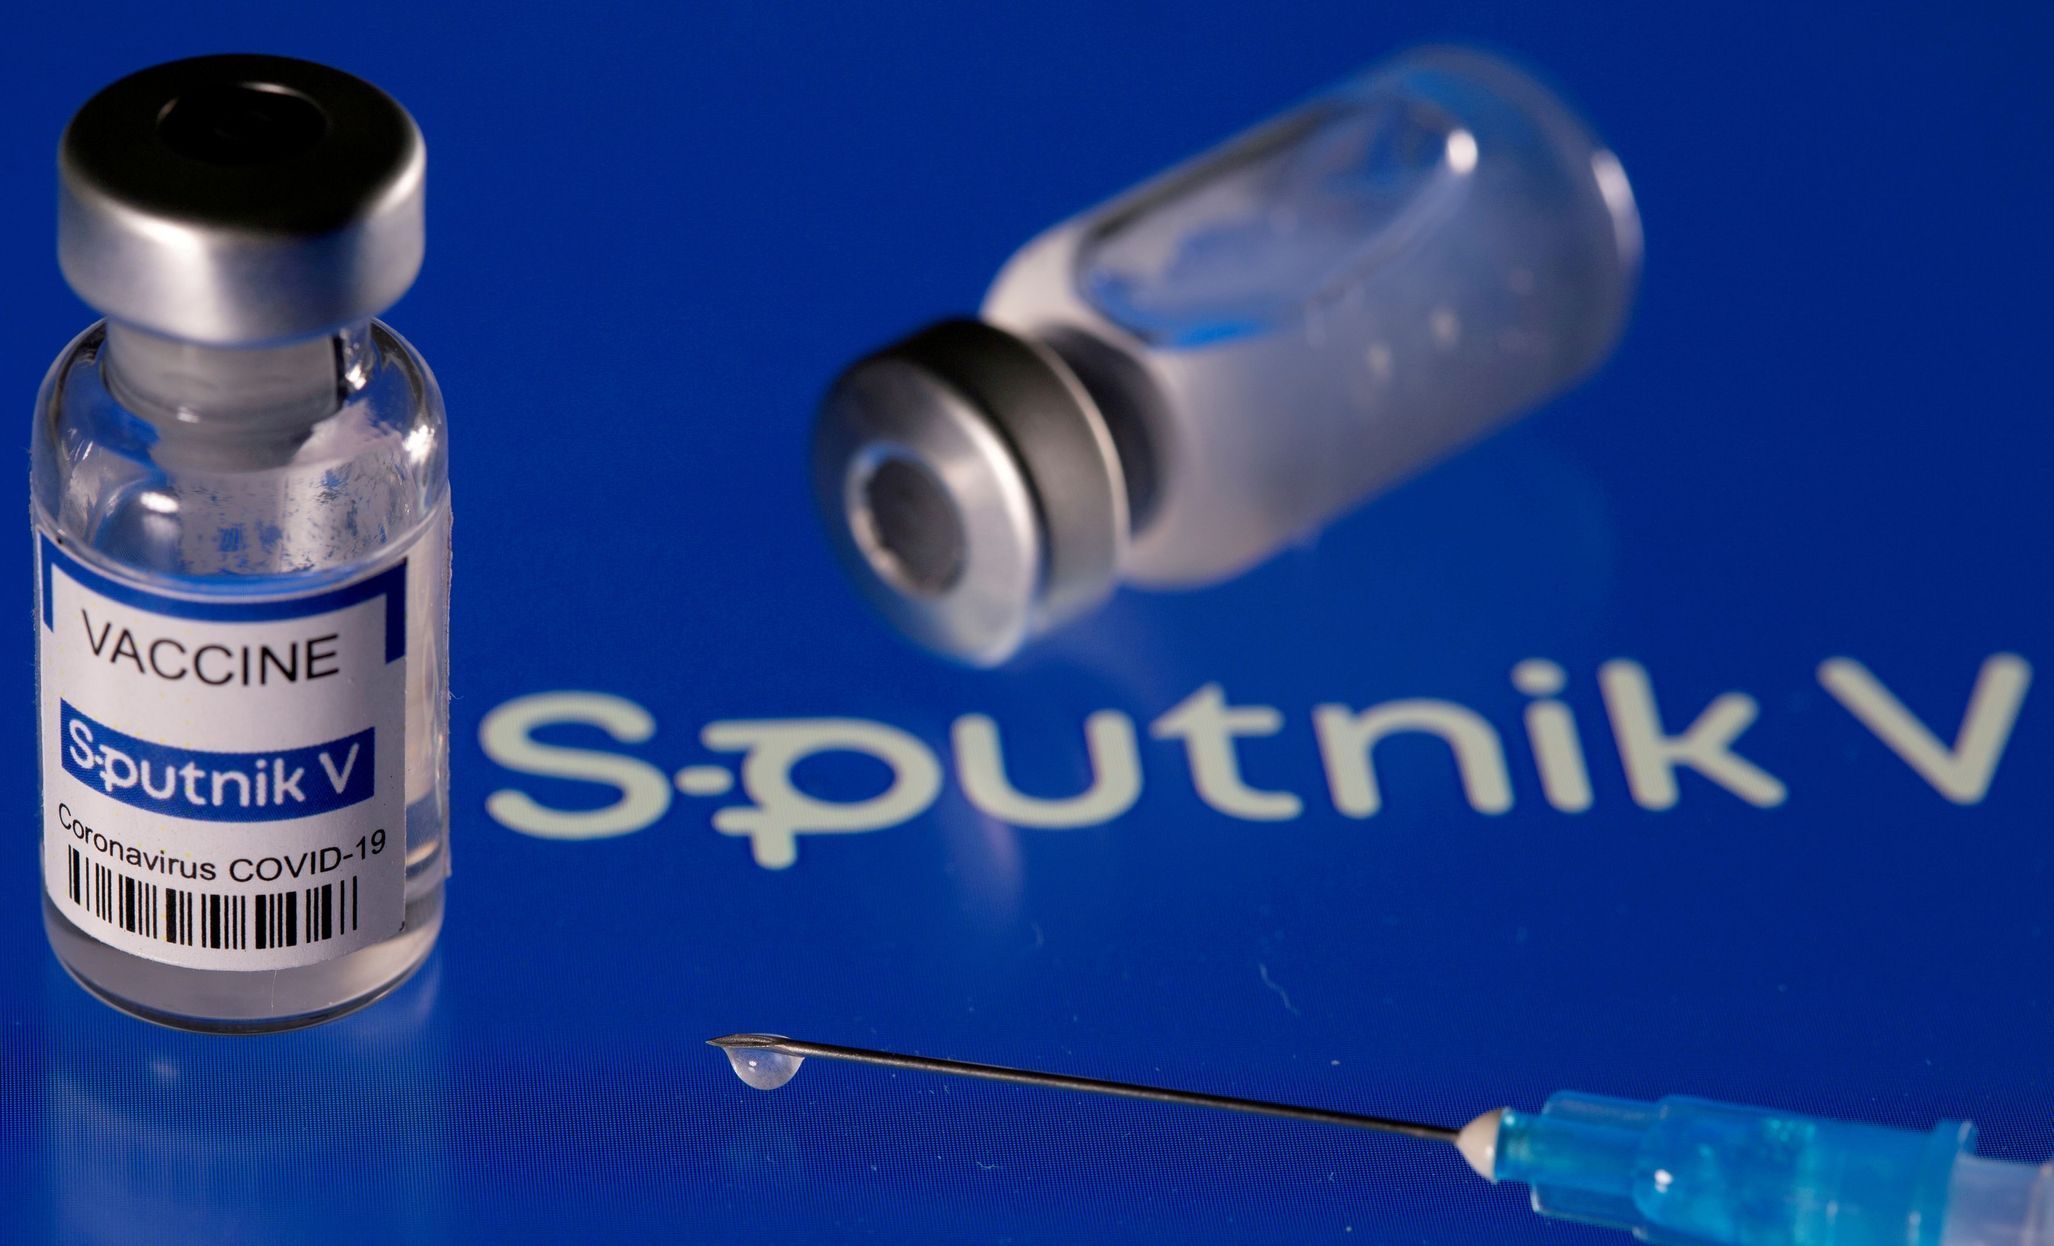 Za jednu dávku Vakcíny Sputnik V zaplatilo Slovensko 17 eur. Očkovat s ní začnou v pondělí v osmi městech.